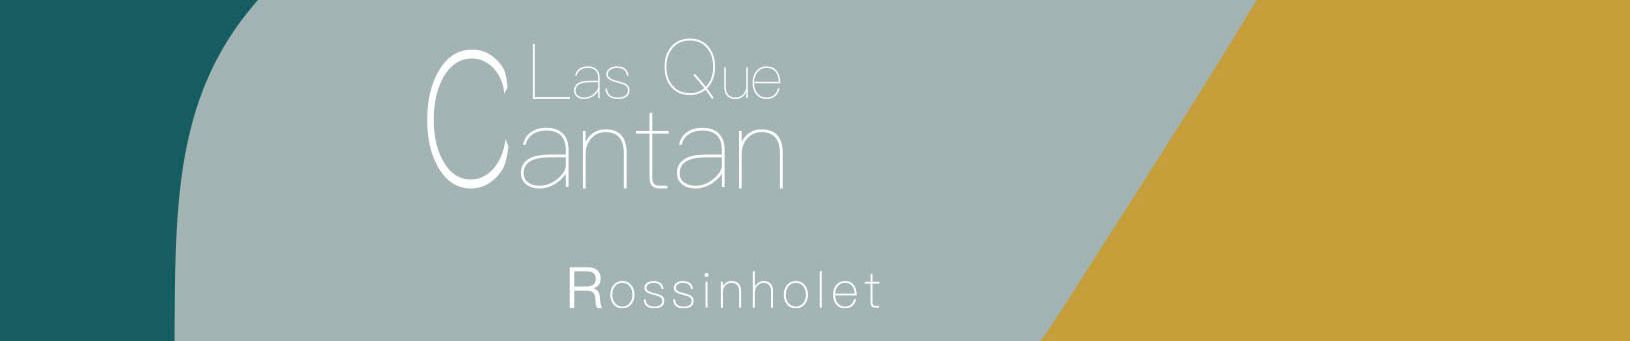 Stream 06 - Tout Serviteur Qui Sert Son Maître by Las Que Cantan | Listen  online for free on SoundCloud